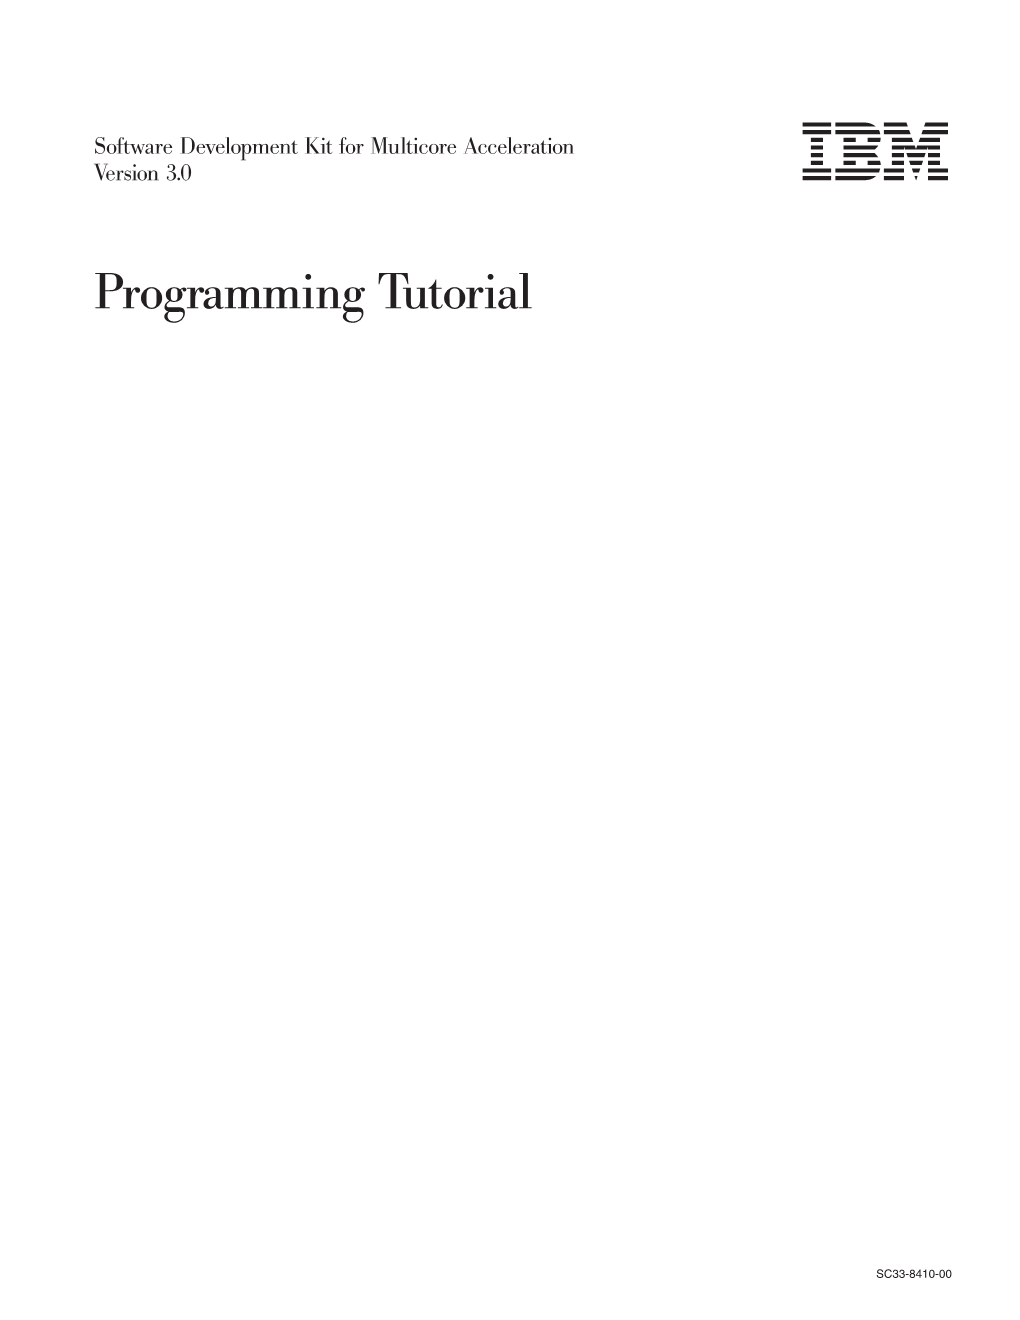 Programming Tutorial